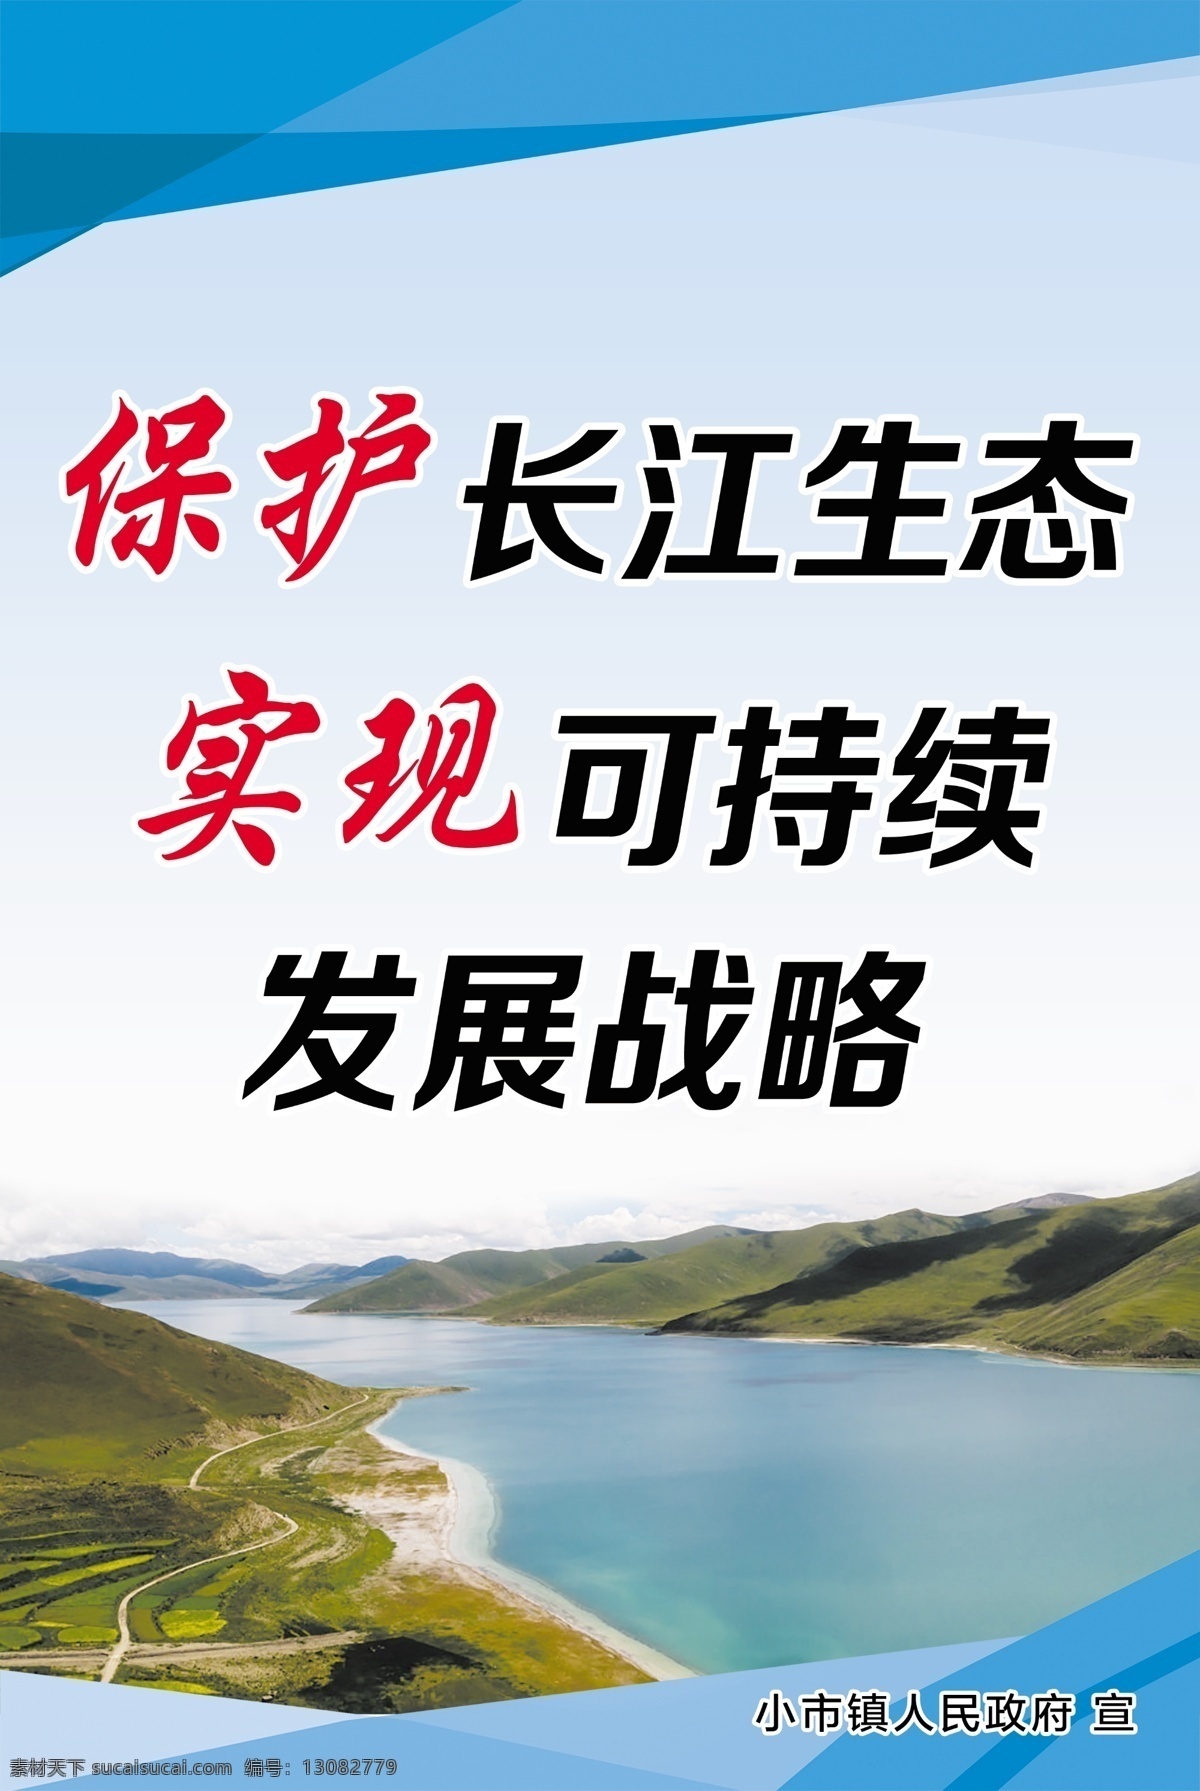 长江禁渔 禁铺 禁捕捞 蓝色 制度四件套 功在当代 保护生态